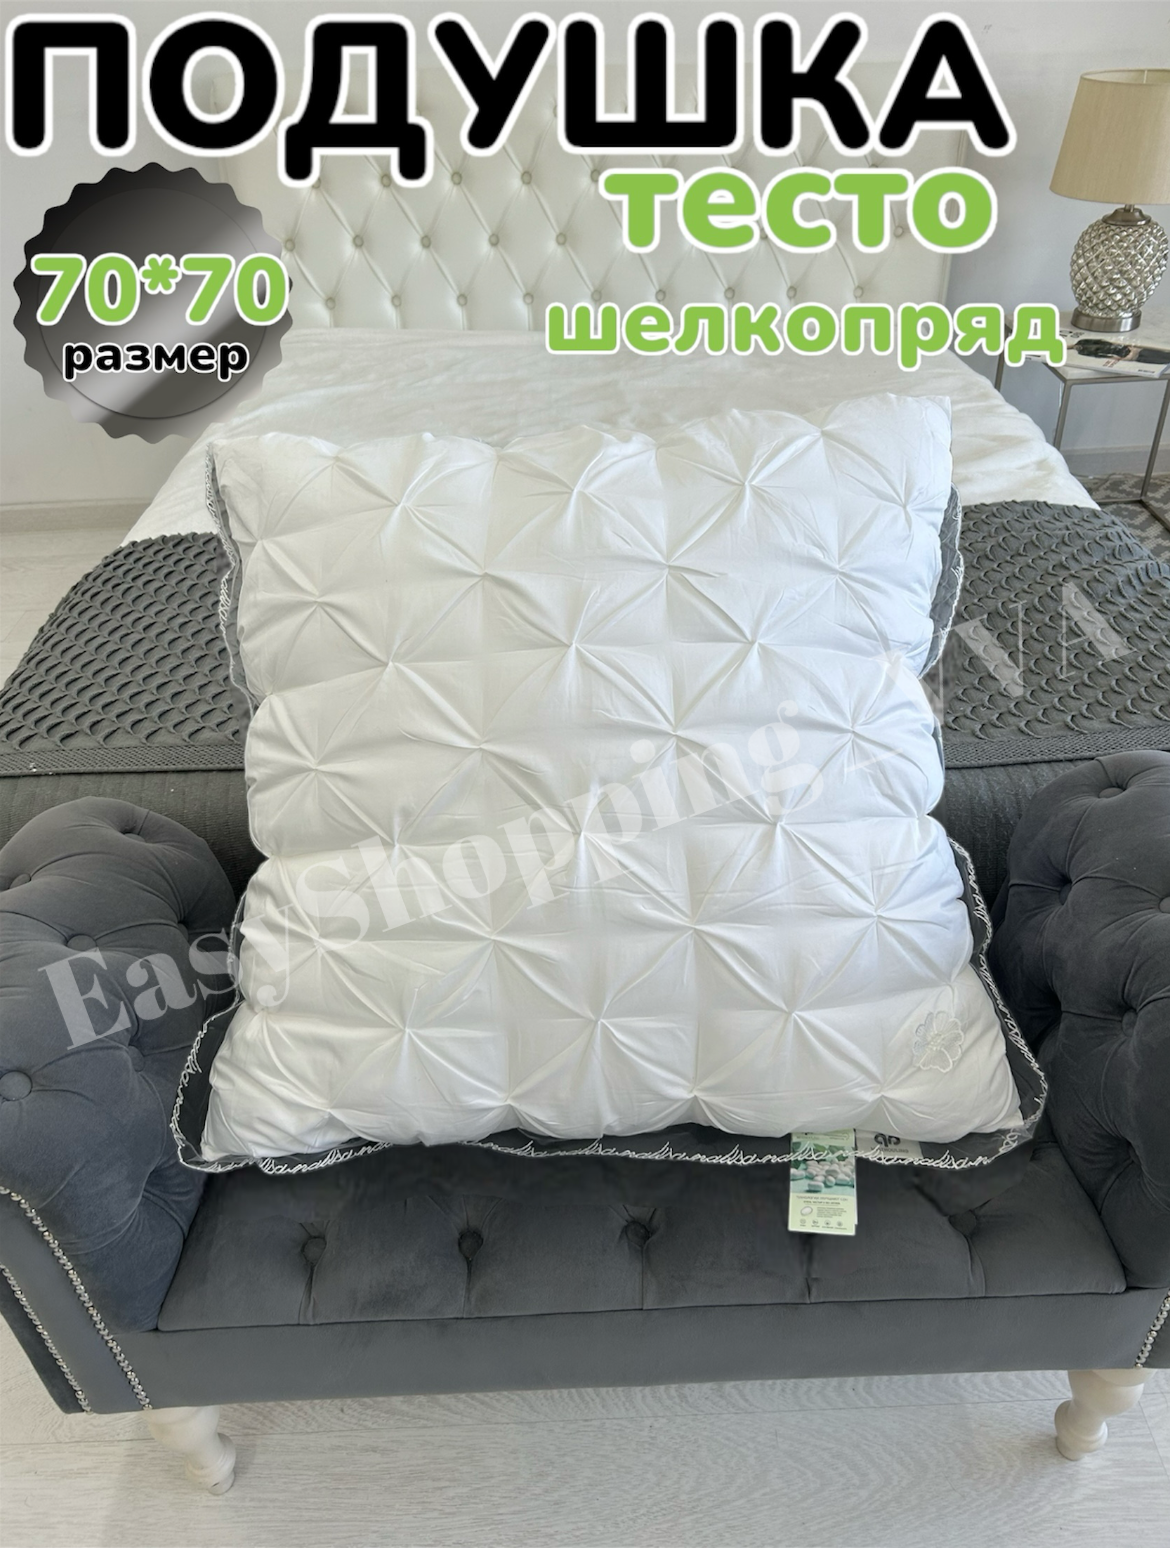 Подушка "Тесто" шелкопряд 70x70 см для сна